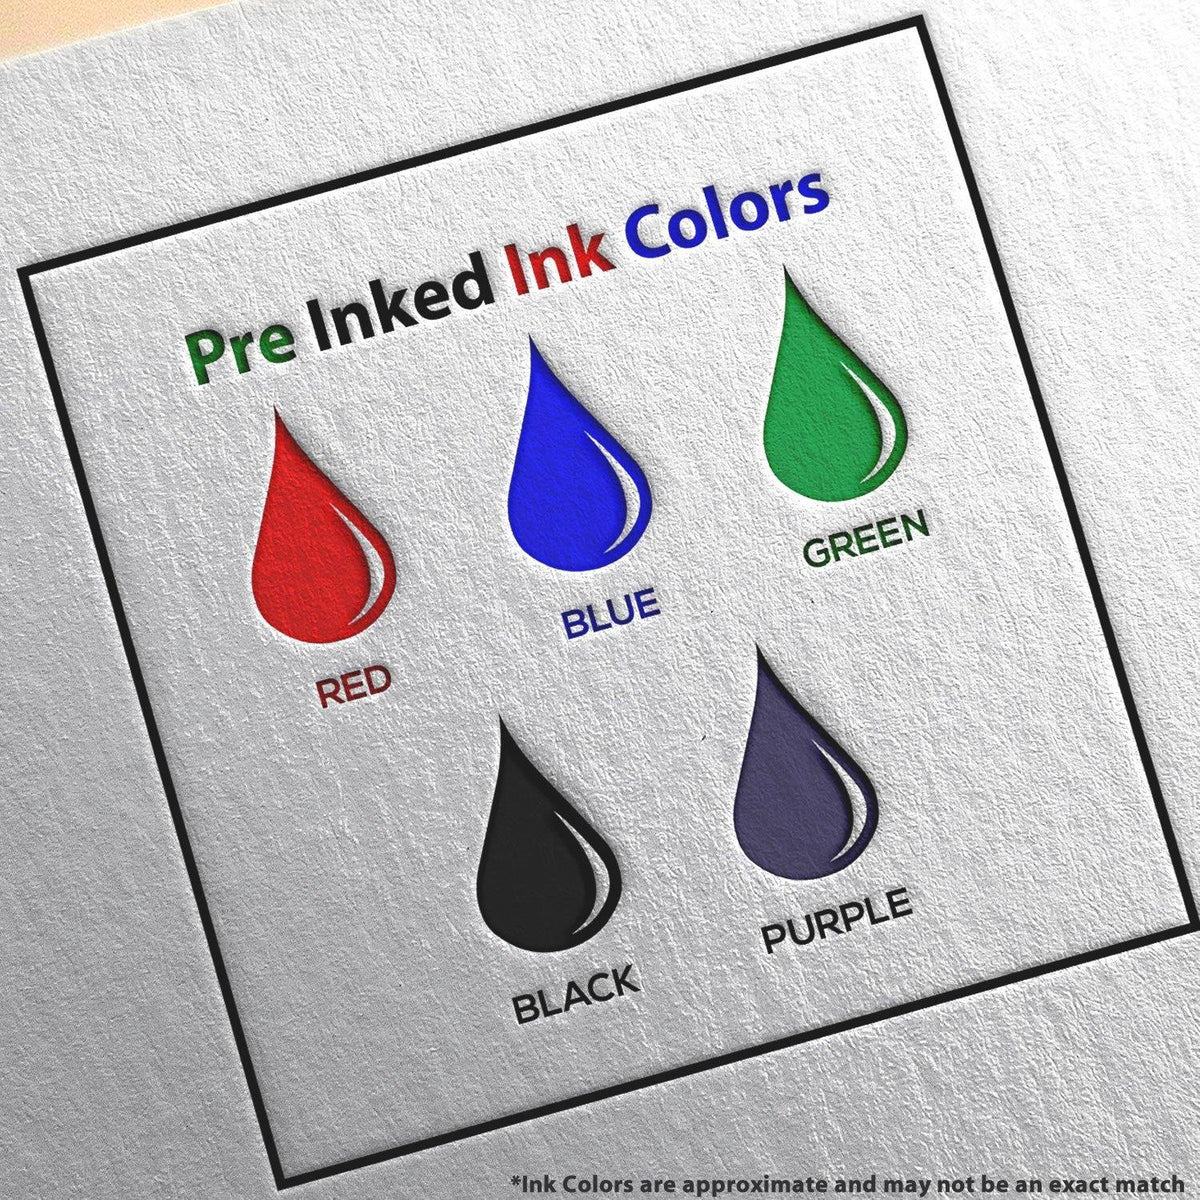 Large Pre-Inked Return for Better Address Stamp Ink Color Options